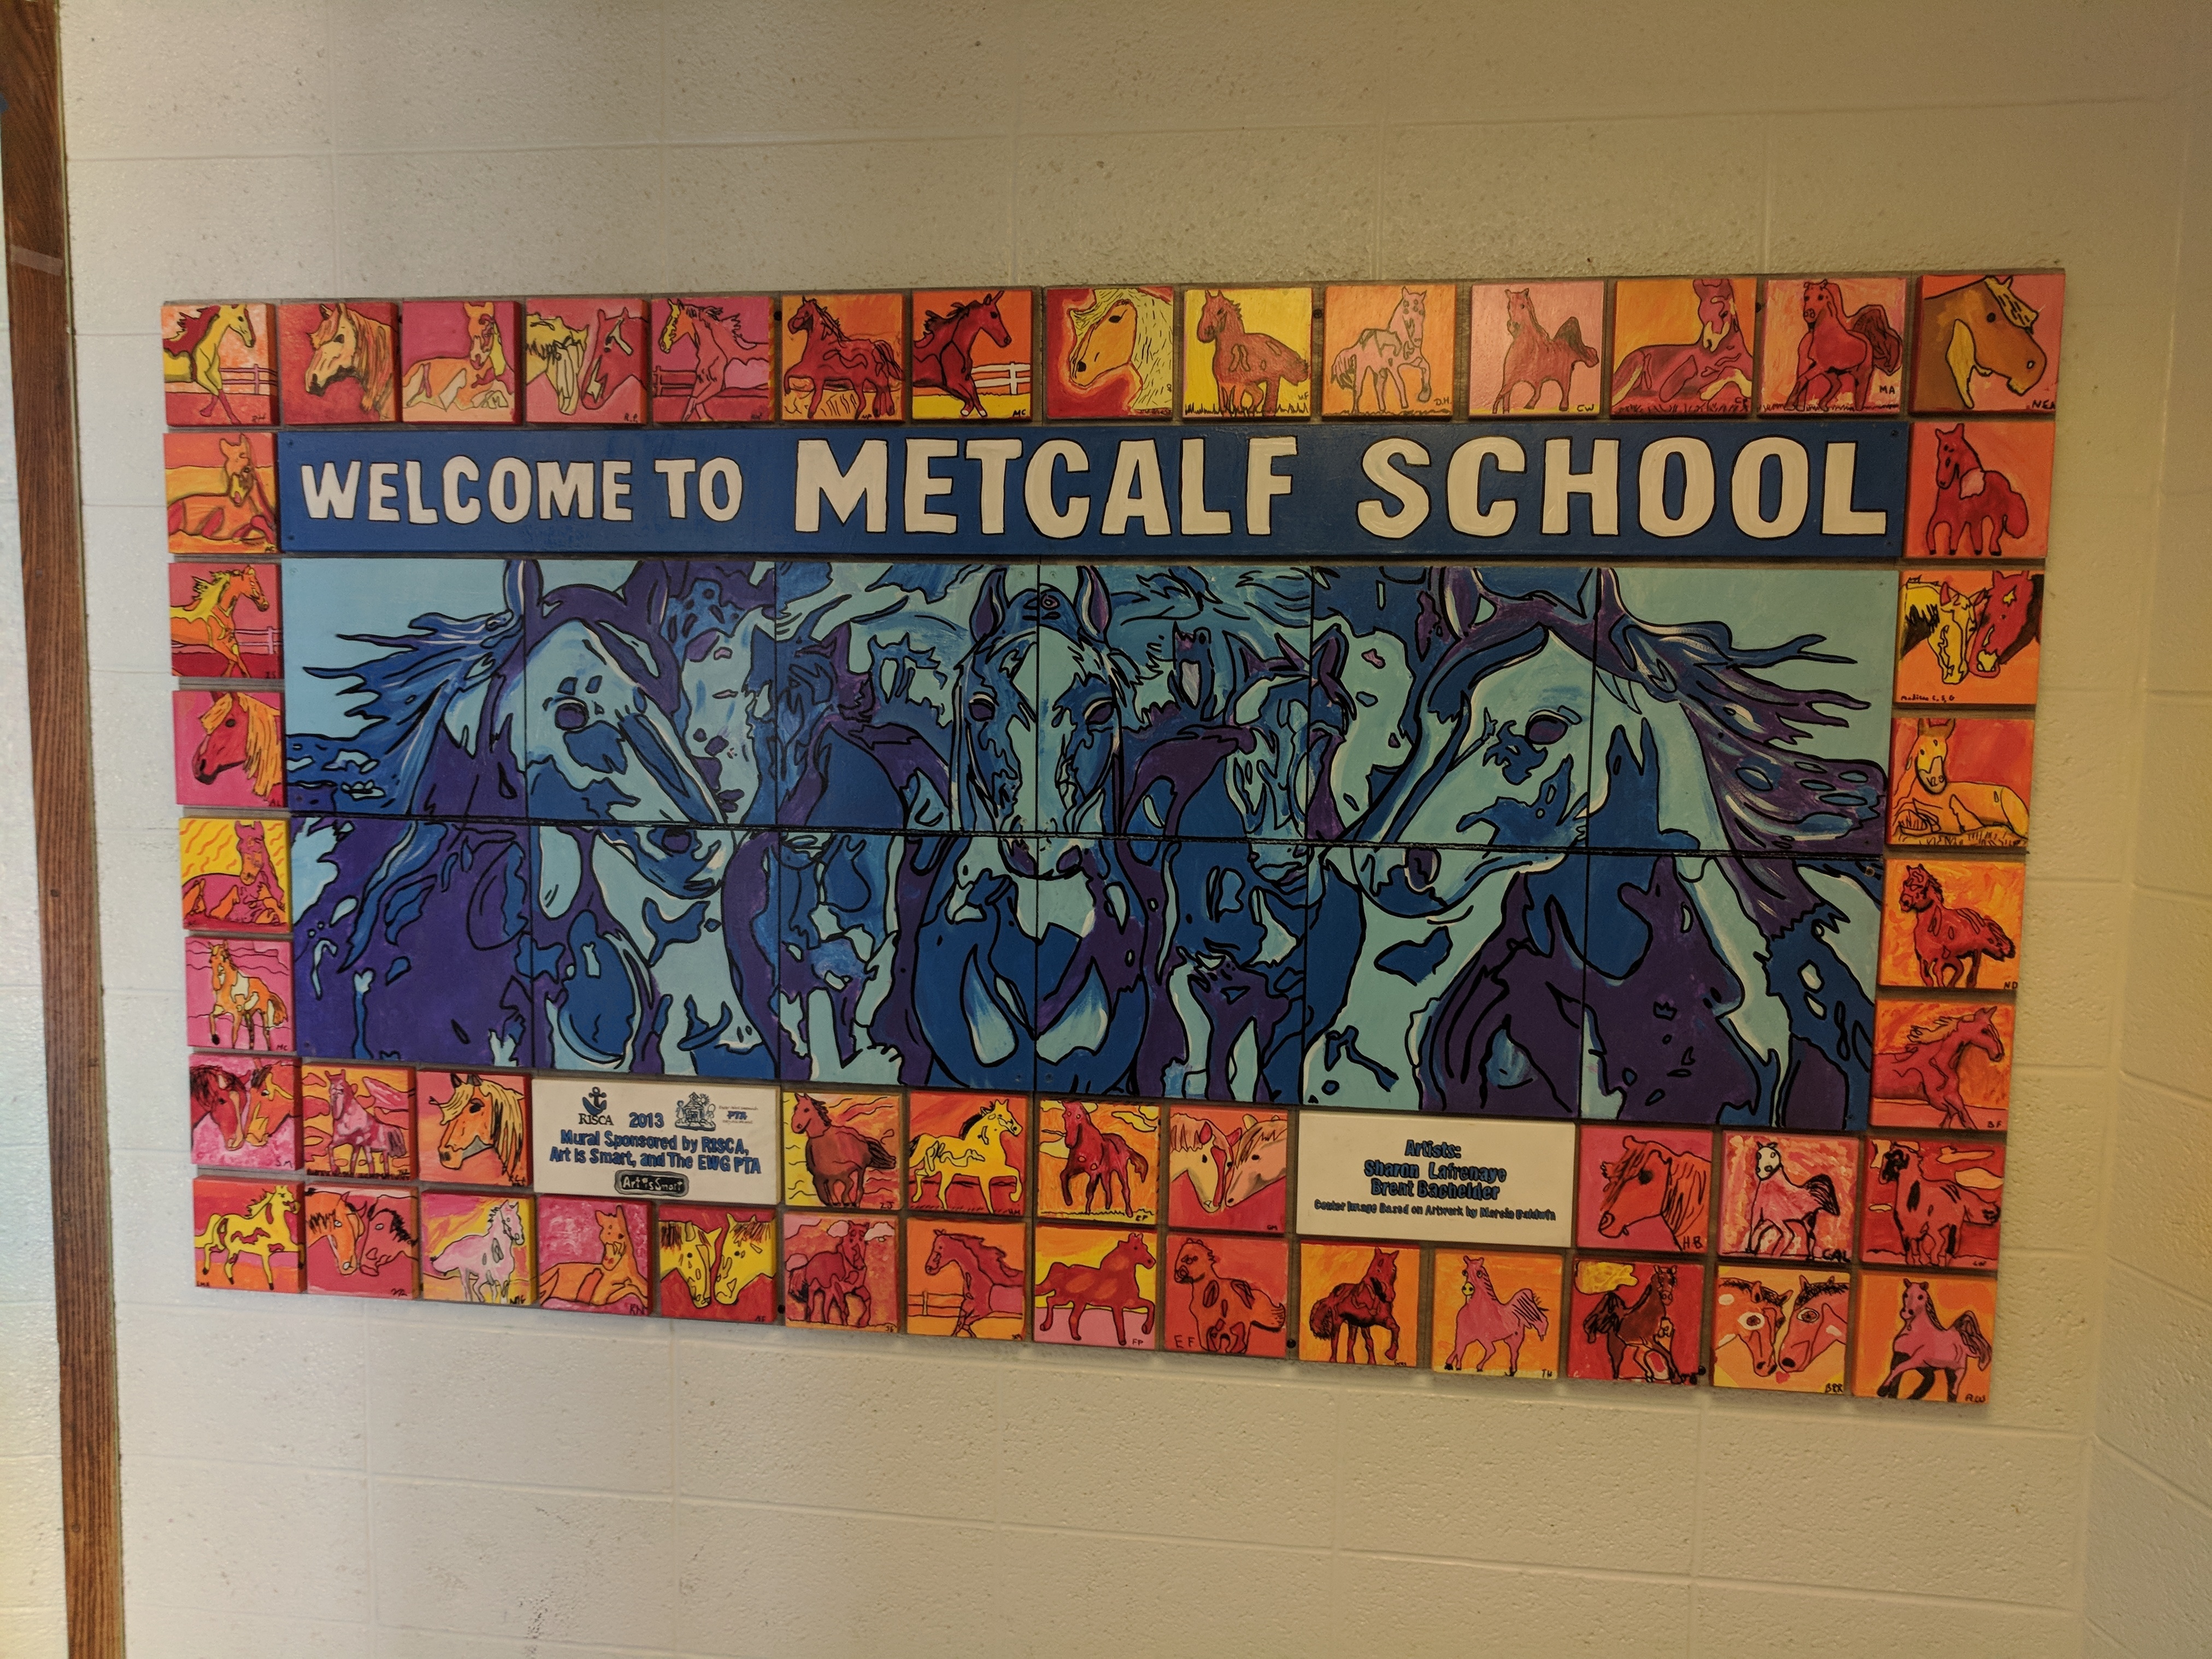 Metcalf School